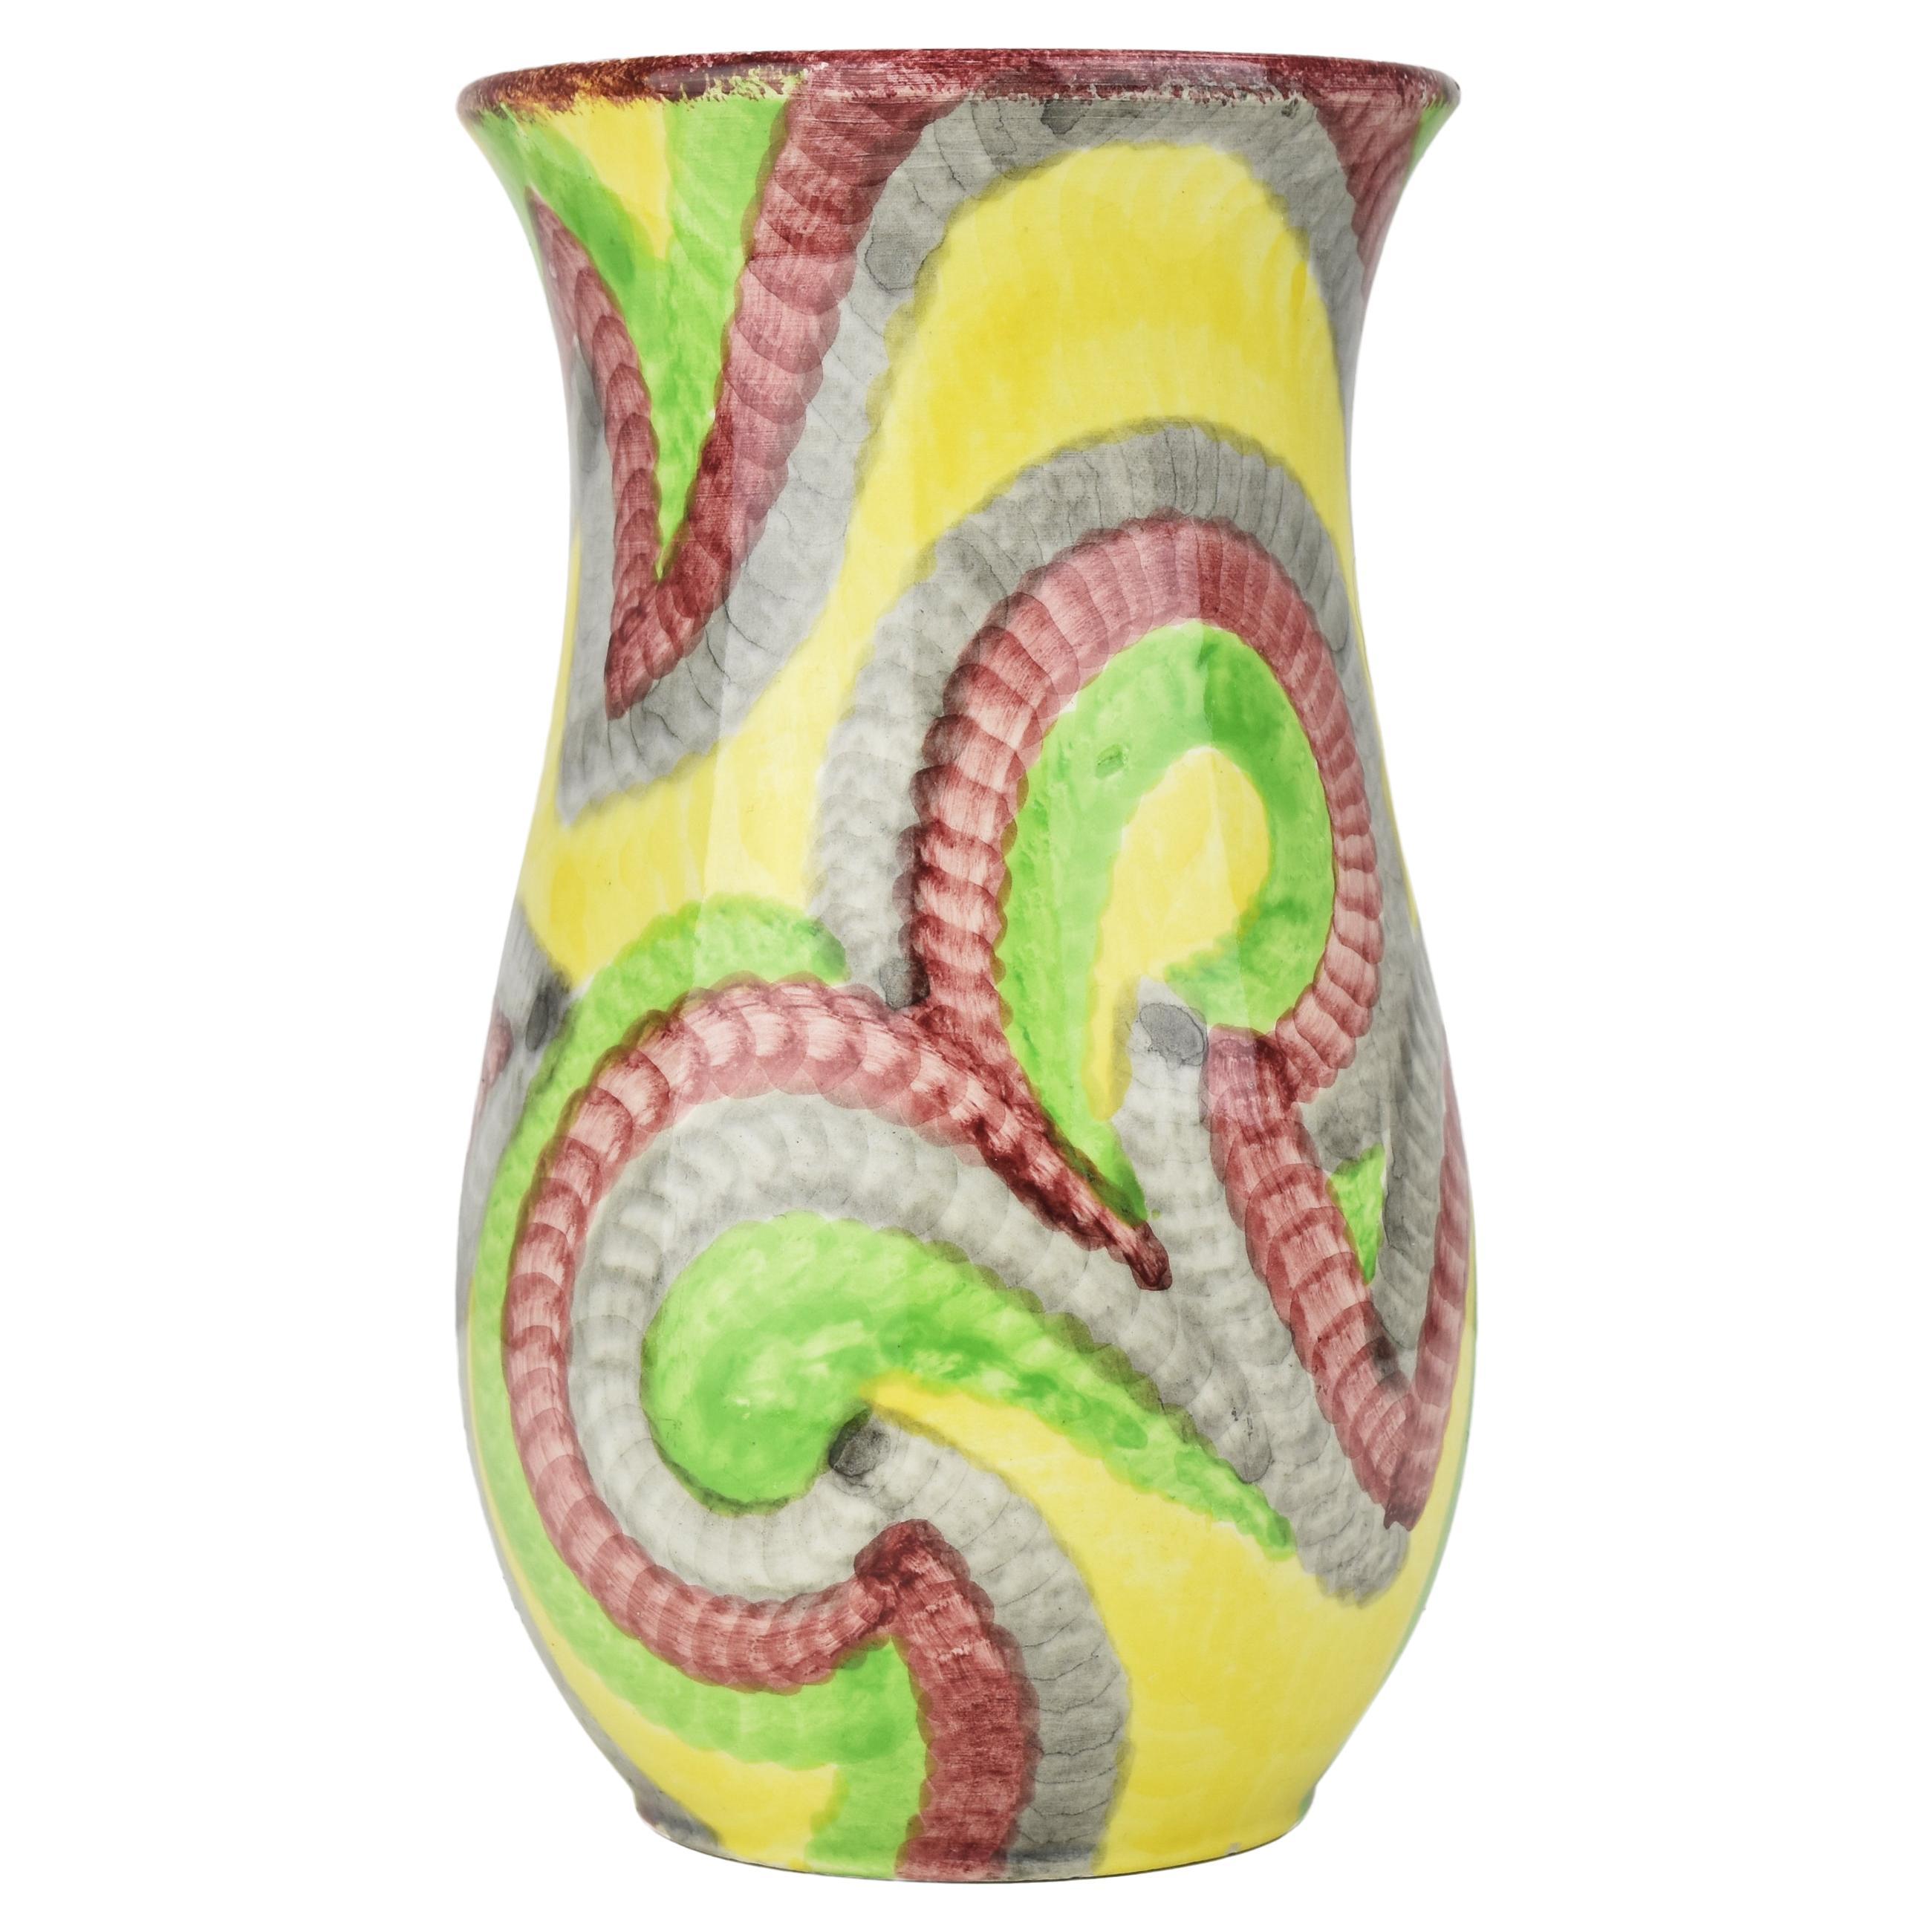 Schramberg Eva Zeisel Gobelin Majolica Ceramic Vase Art Deco Bauhaus Era